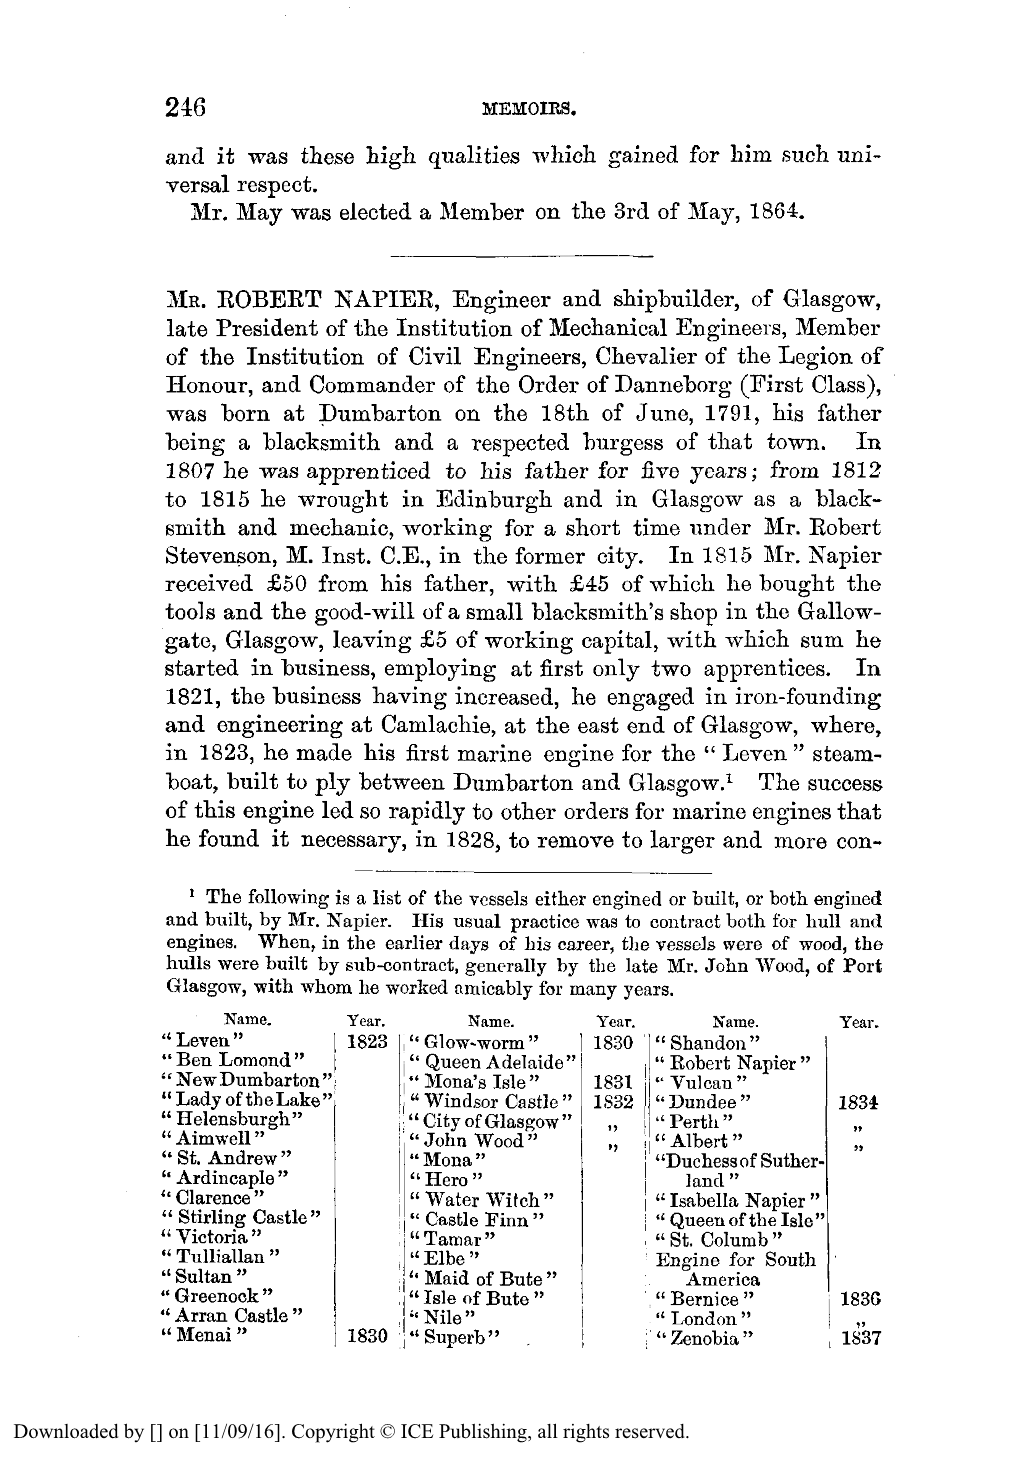 Obituary. Robert Napier, 1791-1876